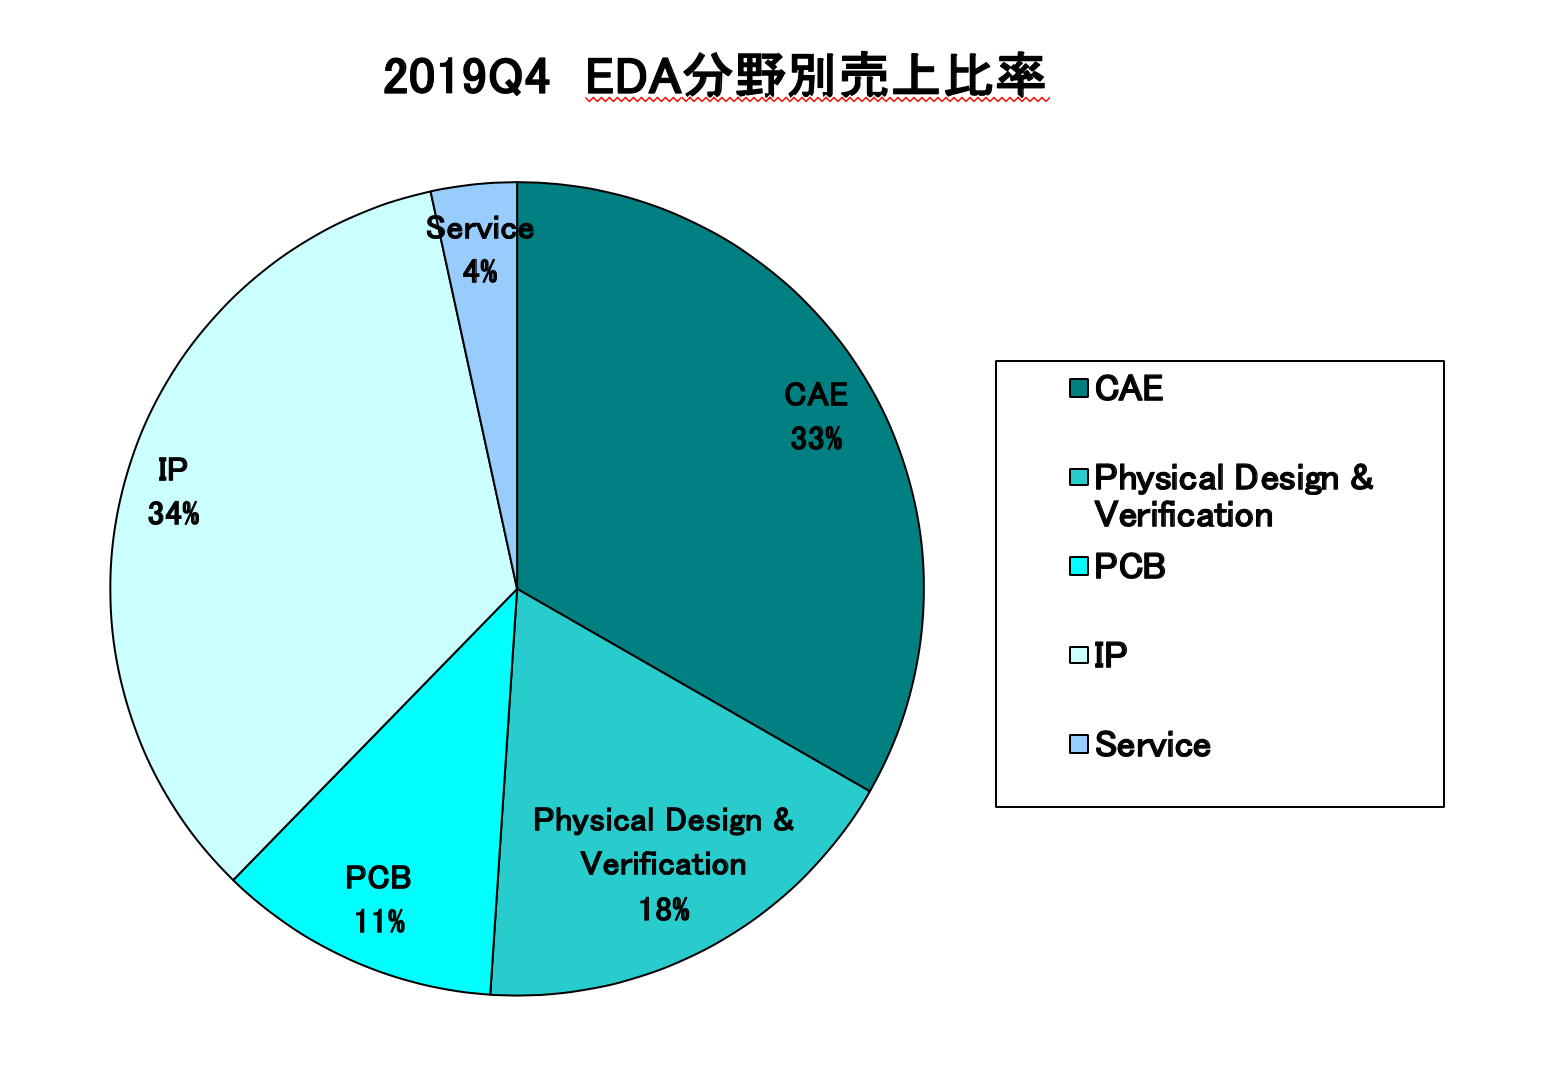 https://www.eda-express.com/%E3%82%B9%E3%82%AF%E3%83%AA%E3%83%BC%E3%83%B3%E3%82%B7%E3%83%A7%E3%83%83%E3%83%88%202020-03-26%209.37.37.png